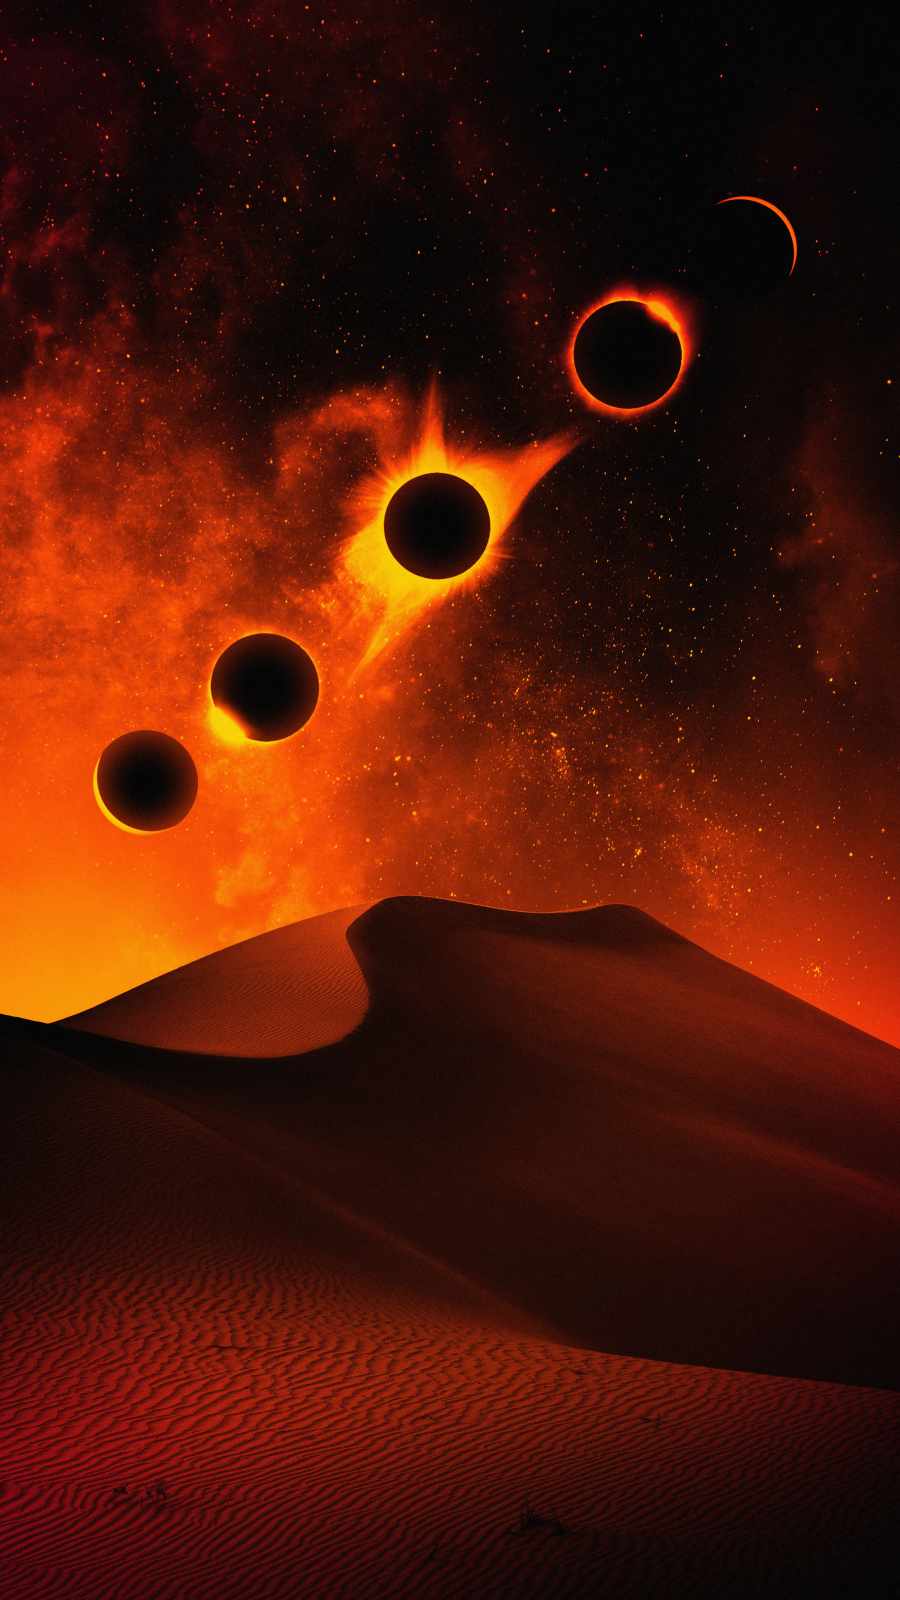 Desert Moon Eclipse iPhone Wallpaper